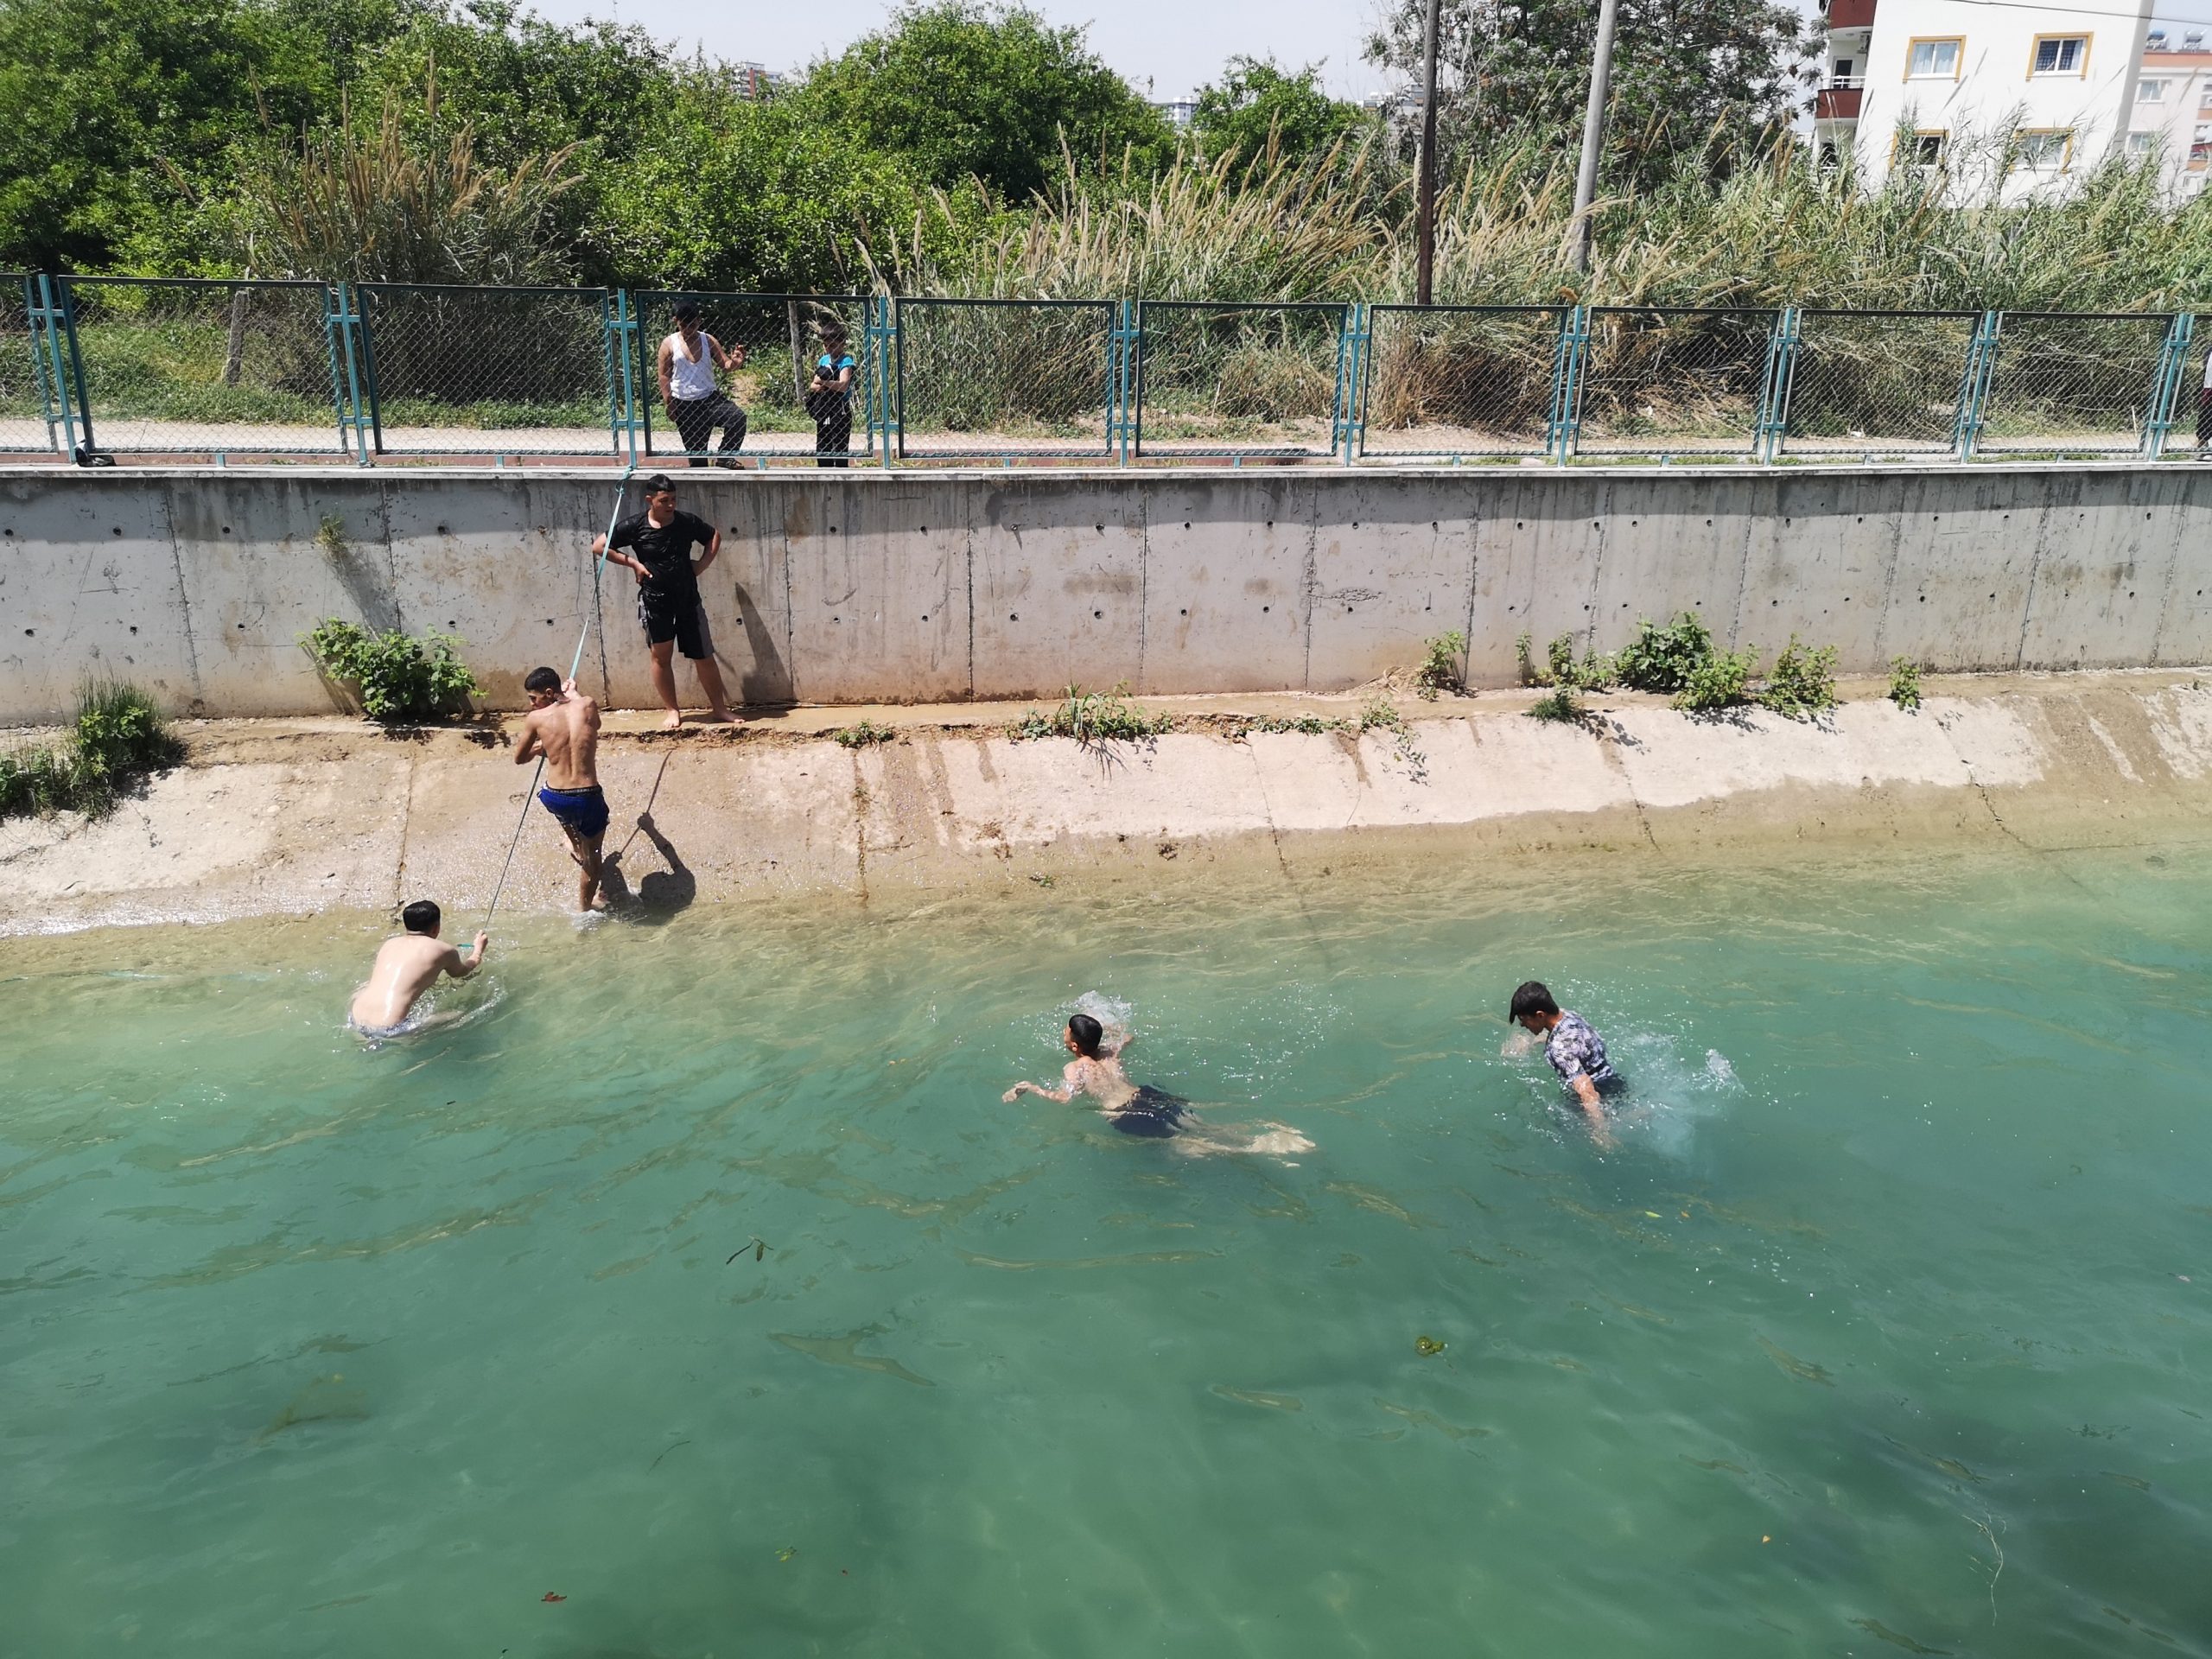 Kısıtlamaya Rağmen Gençler Sulama Kanallarına Girerek Serinlemeye Çalıştı